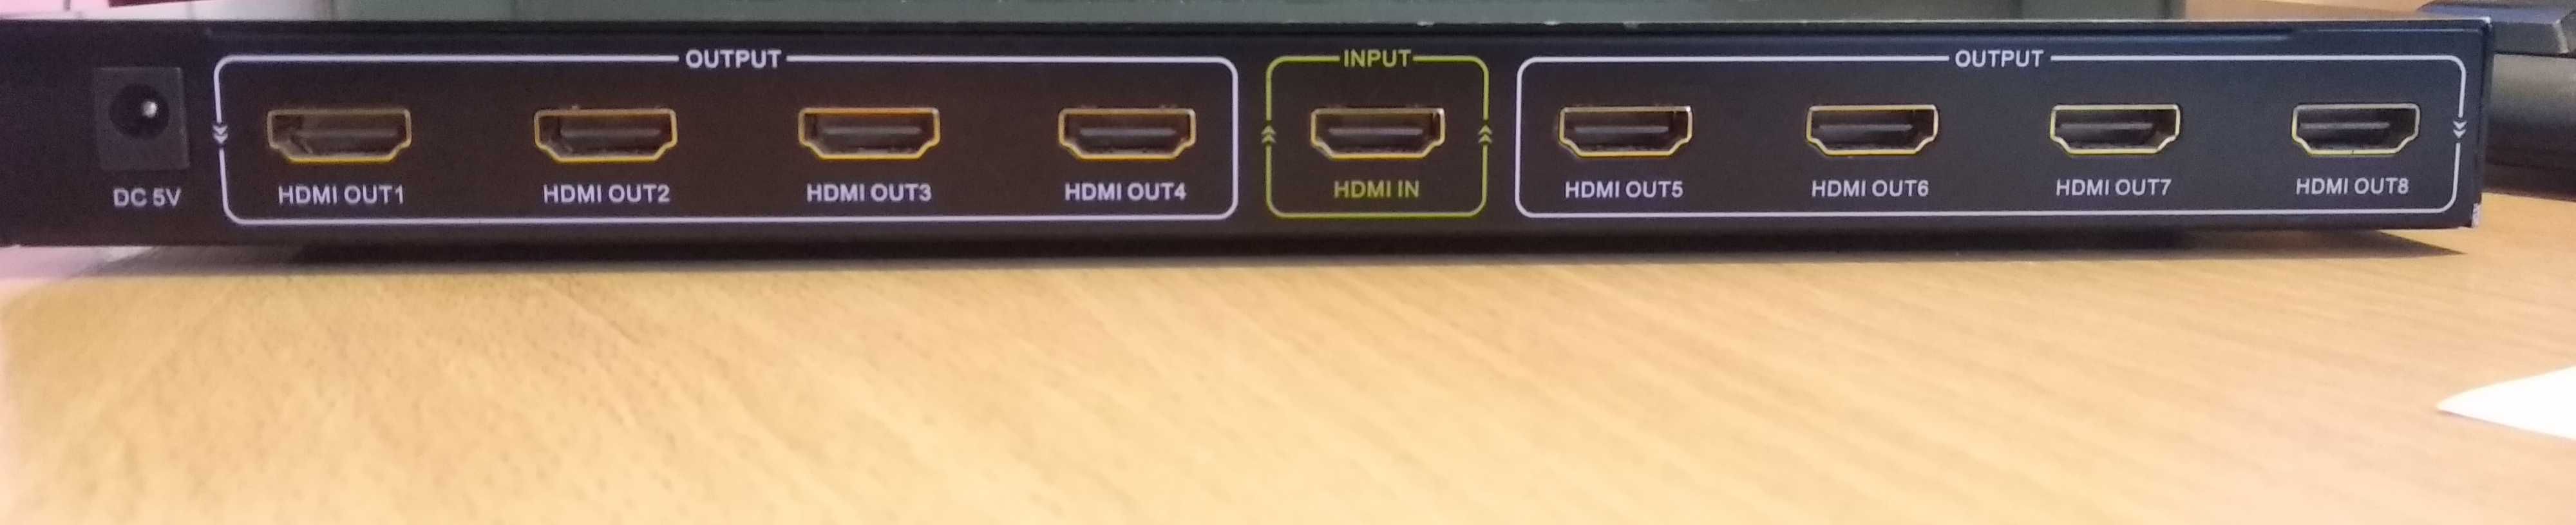 HDMI сплітер на 8 виходів